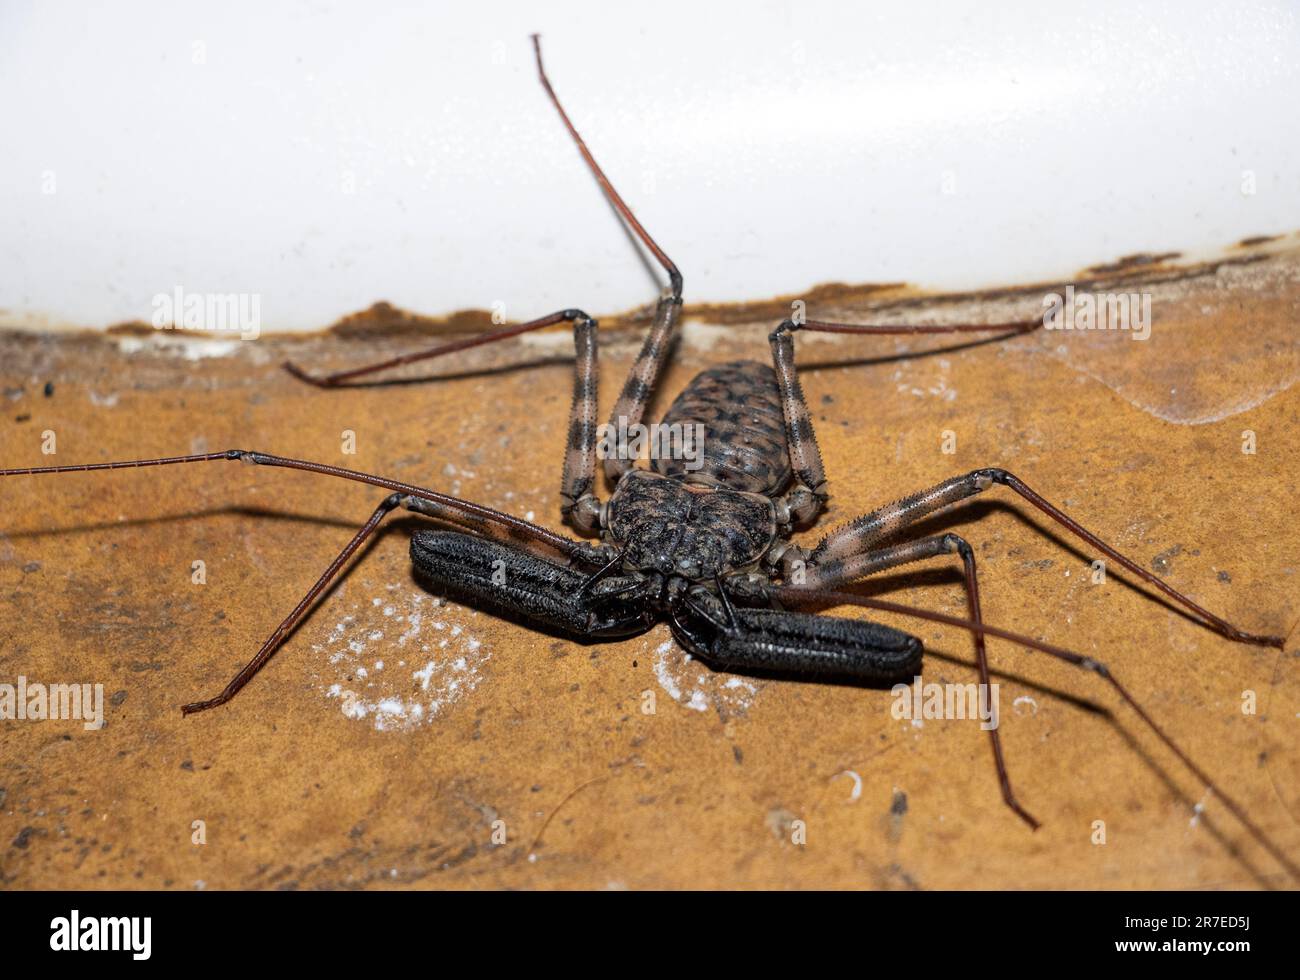 Obwohl der schwanzlose Whip Scorpion ziemlich alarmierend aussieht, sind sie in Wirklichkeit absolut harmlos. Ihre vergrößerten Vorderbeine fungieren als peitschenartige Fühler. Stockfoto